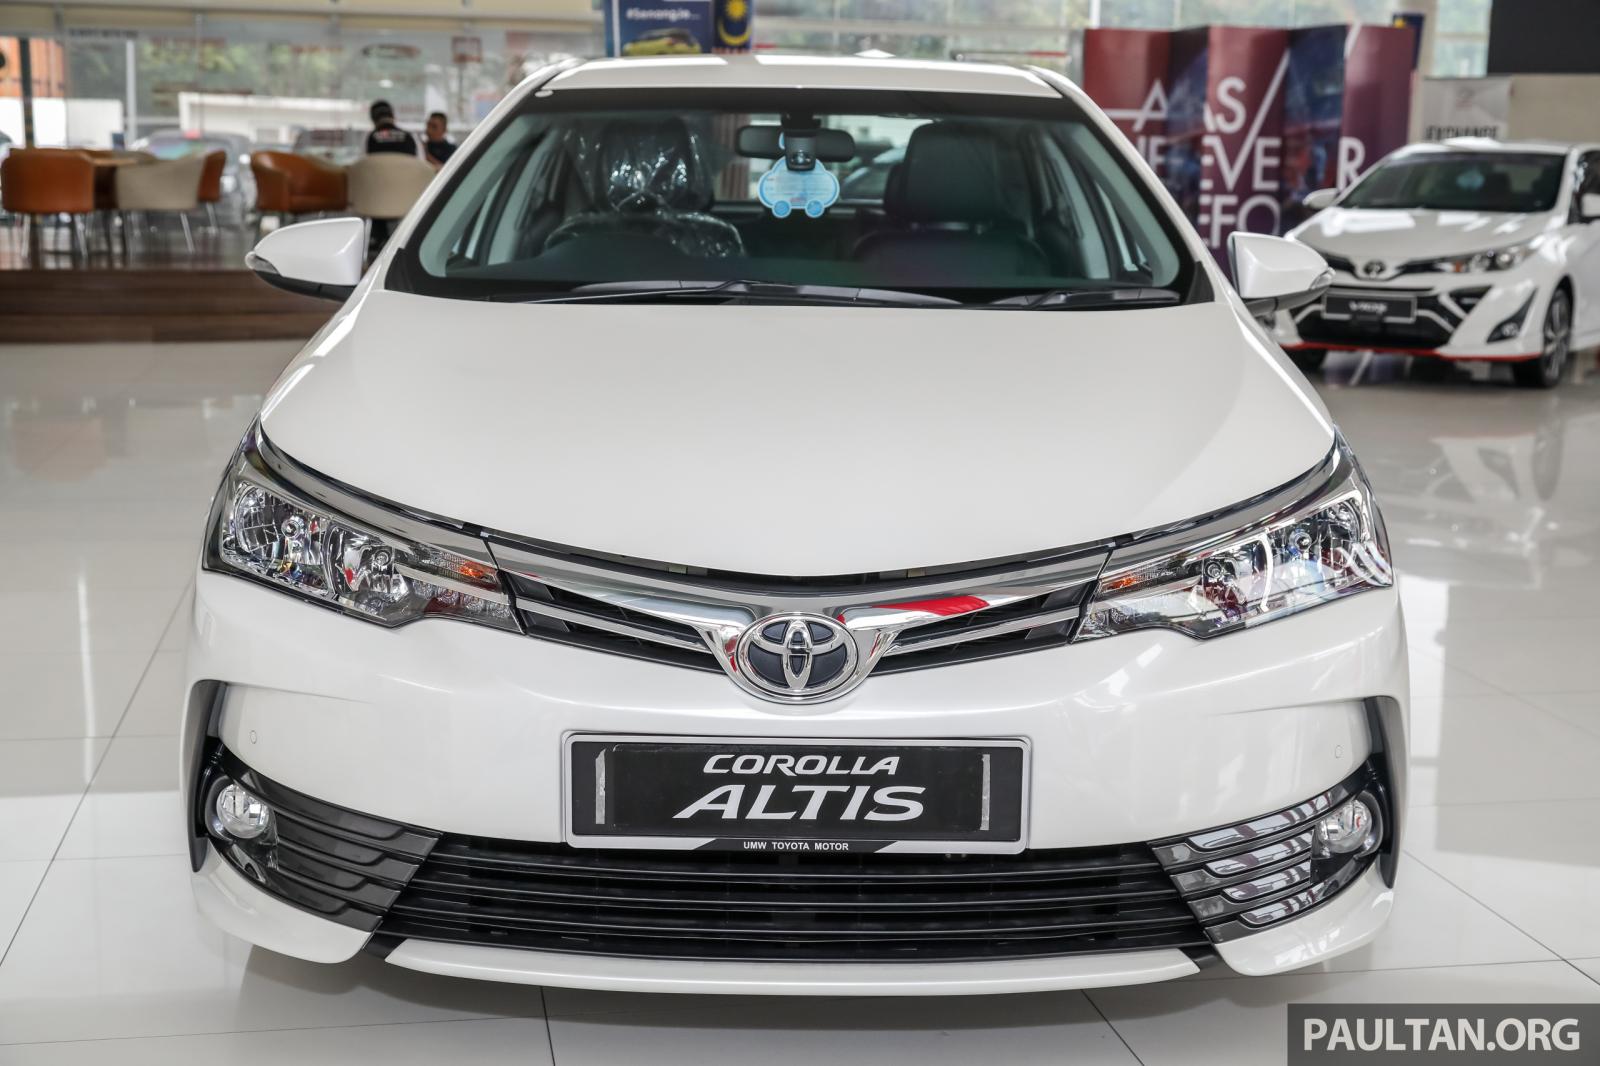 Toyota Altis 2018 Philippines: Price, Specs, Interior, Exterior and More